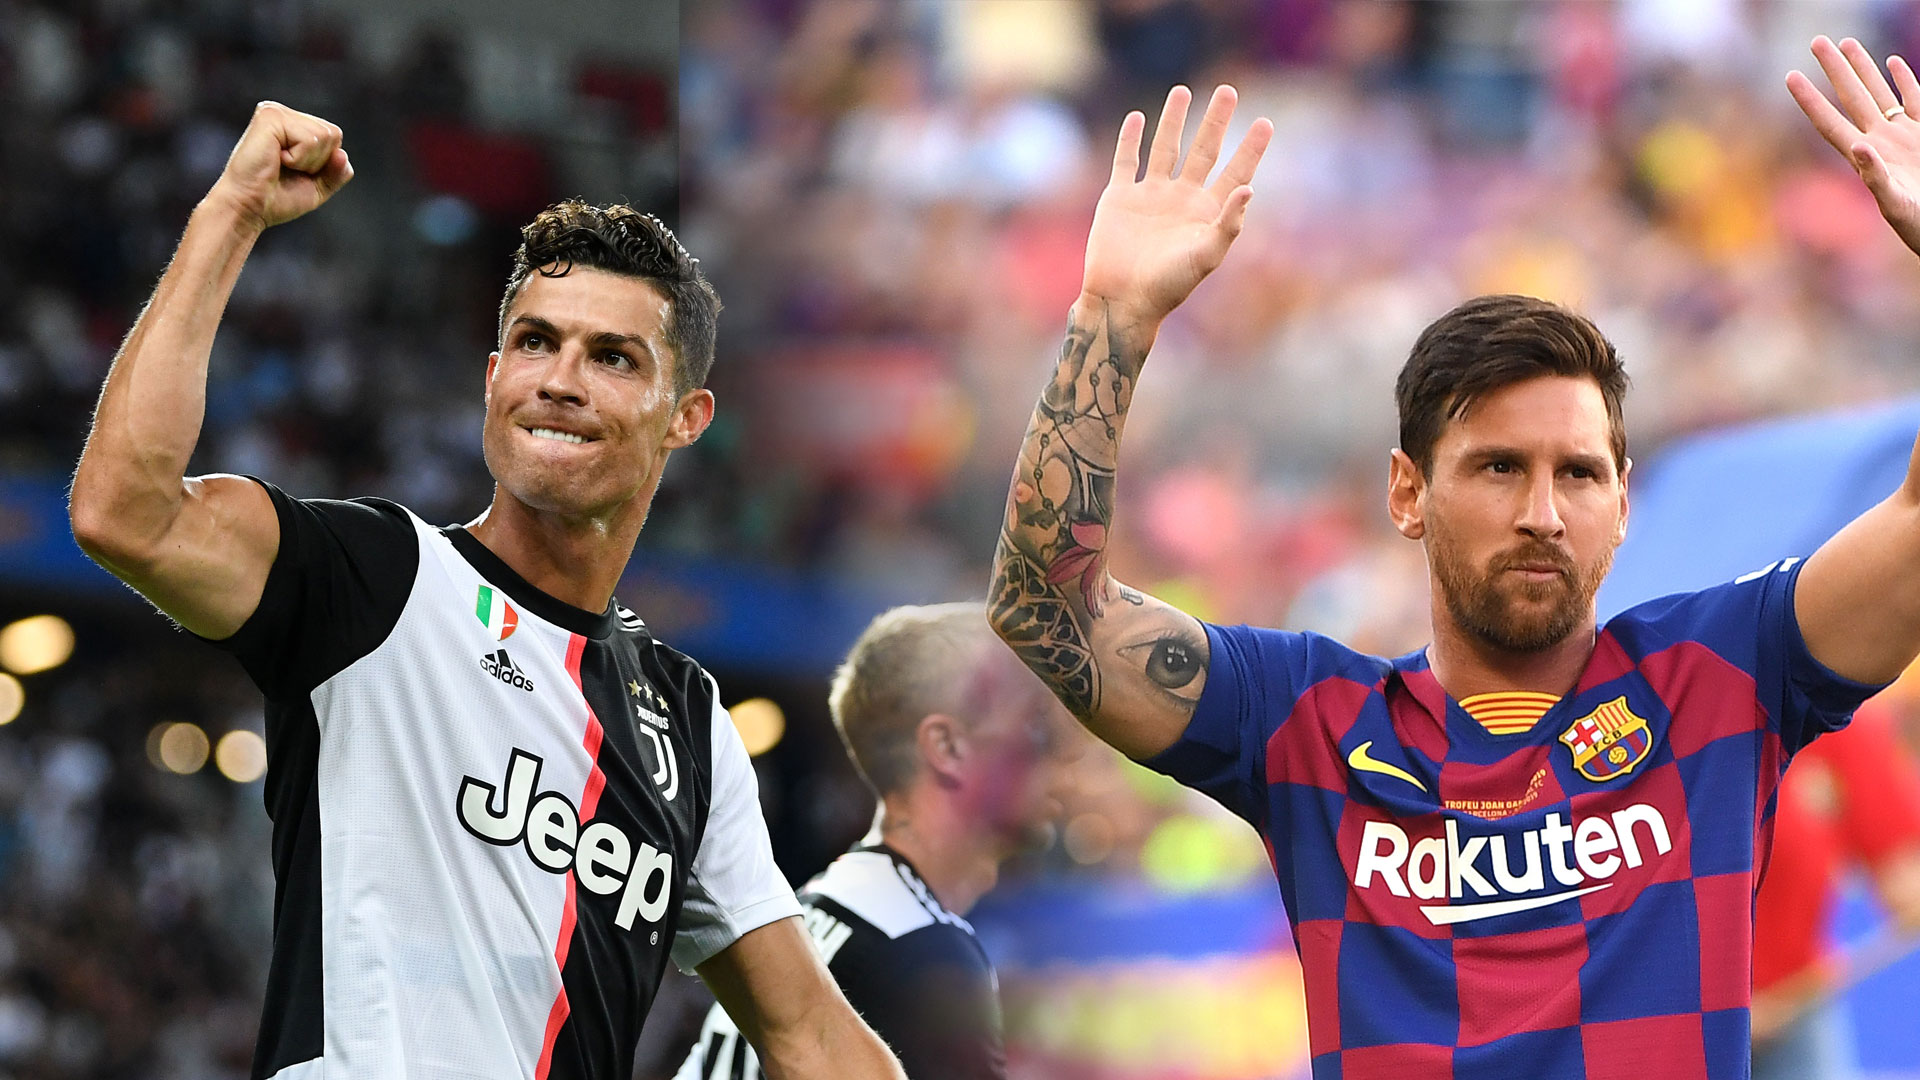 Un joueur ghanéen refuse de choisir entre Messi et Ronaldo et fait une analyse parfaite